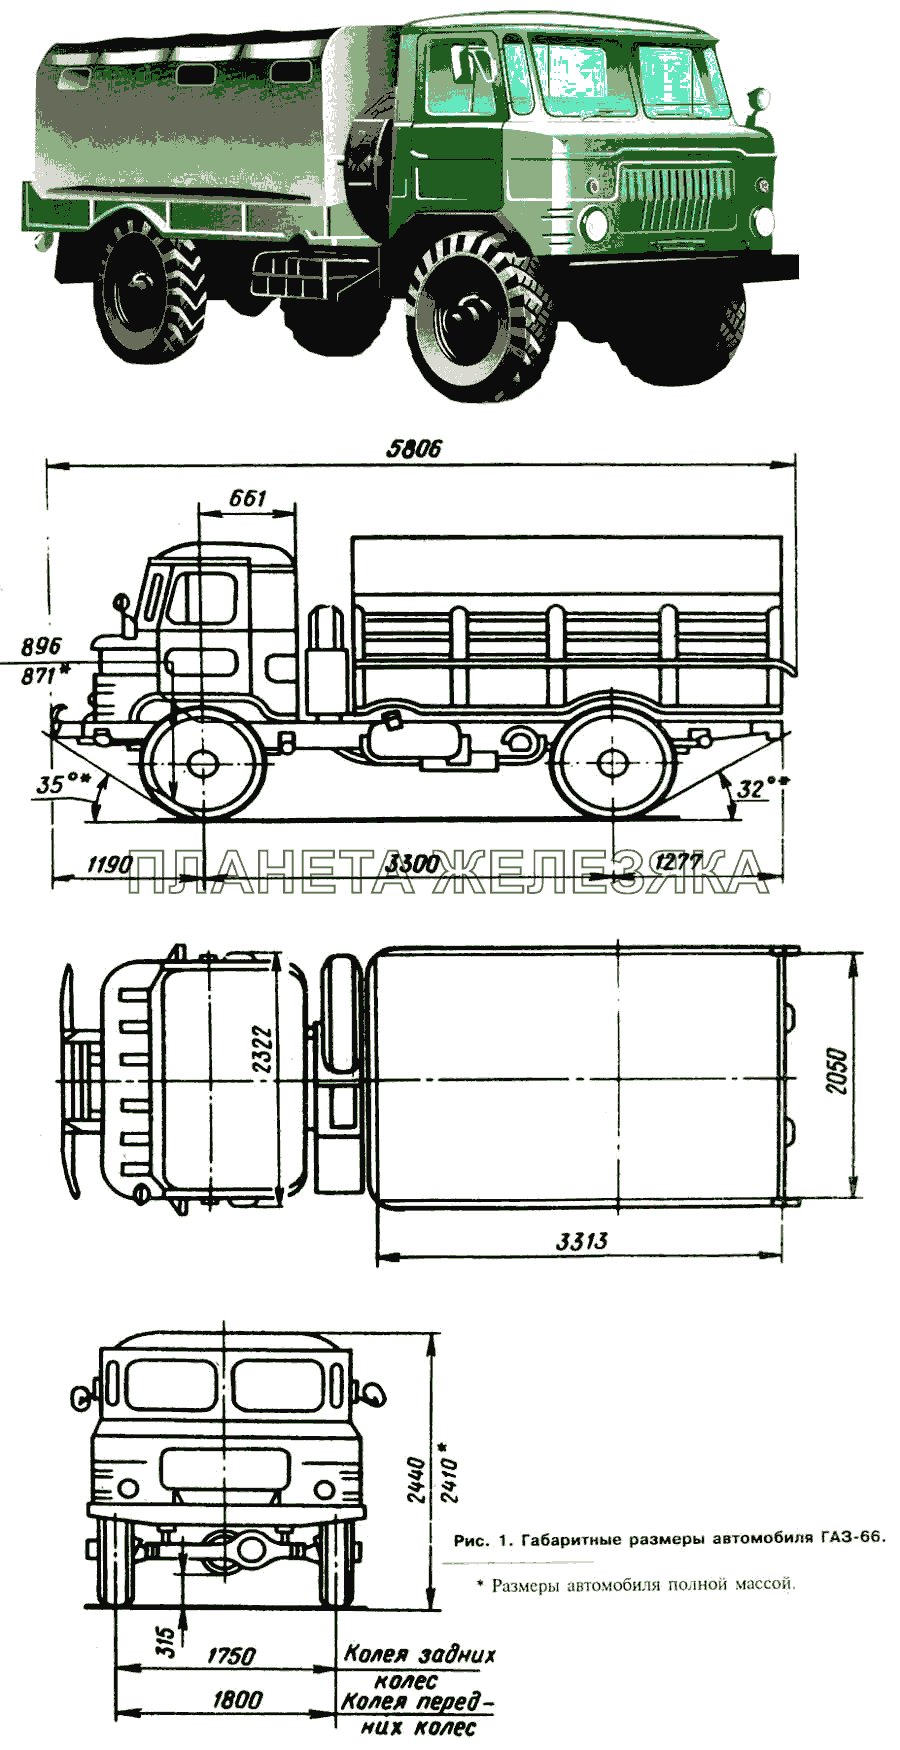 Внешний вид и габаритные размеры автомобиля ГАЗ-66 ГАЗ-66 (Каталог 1996 г.)